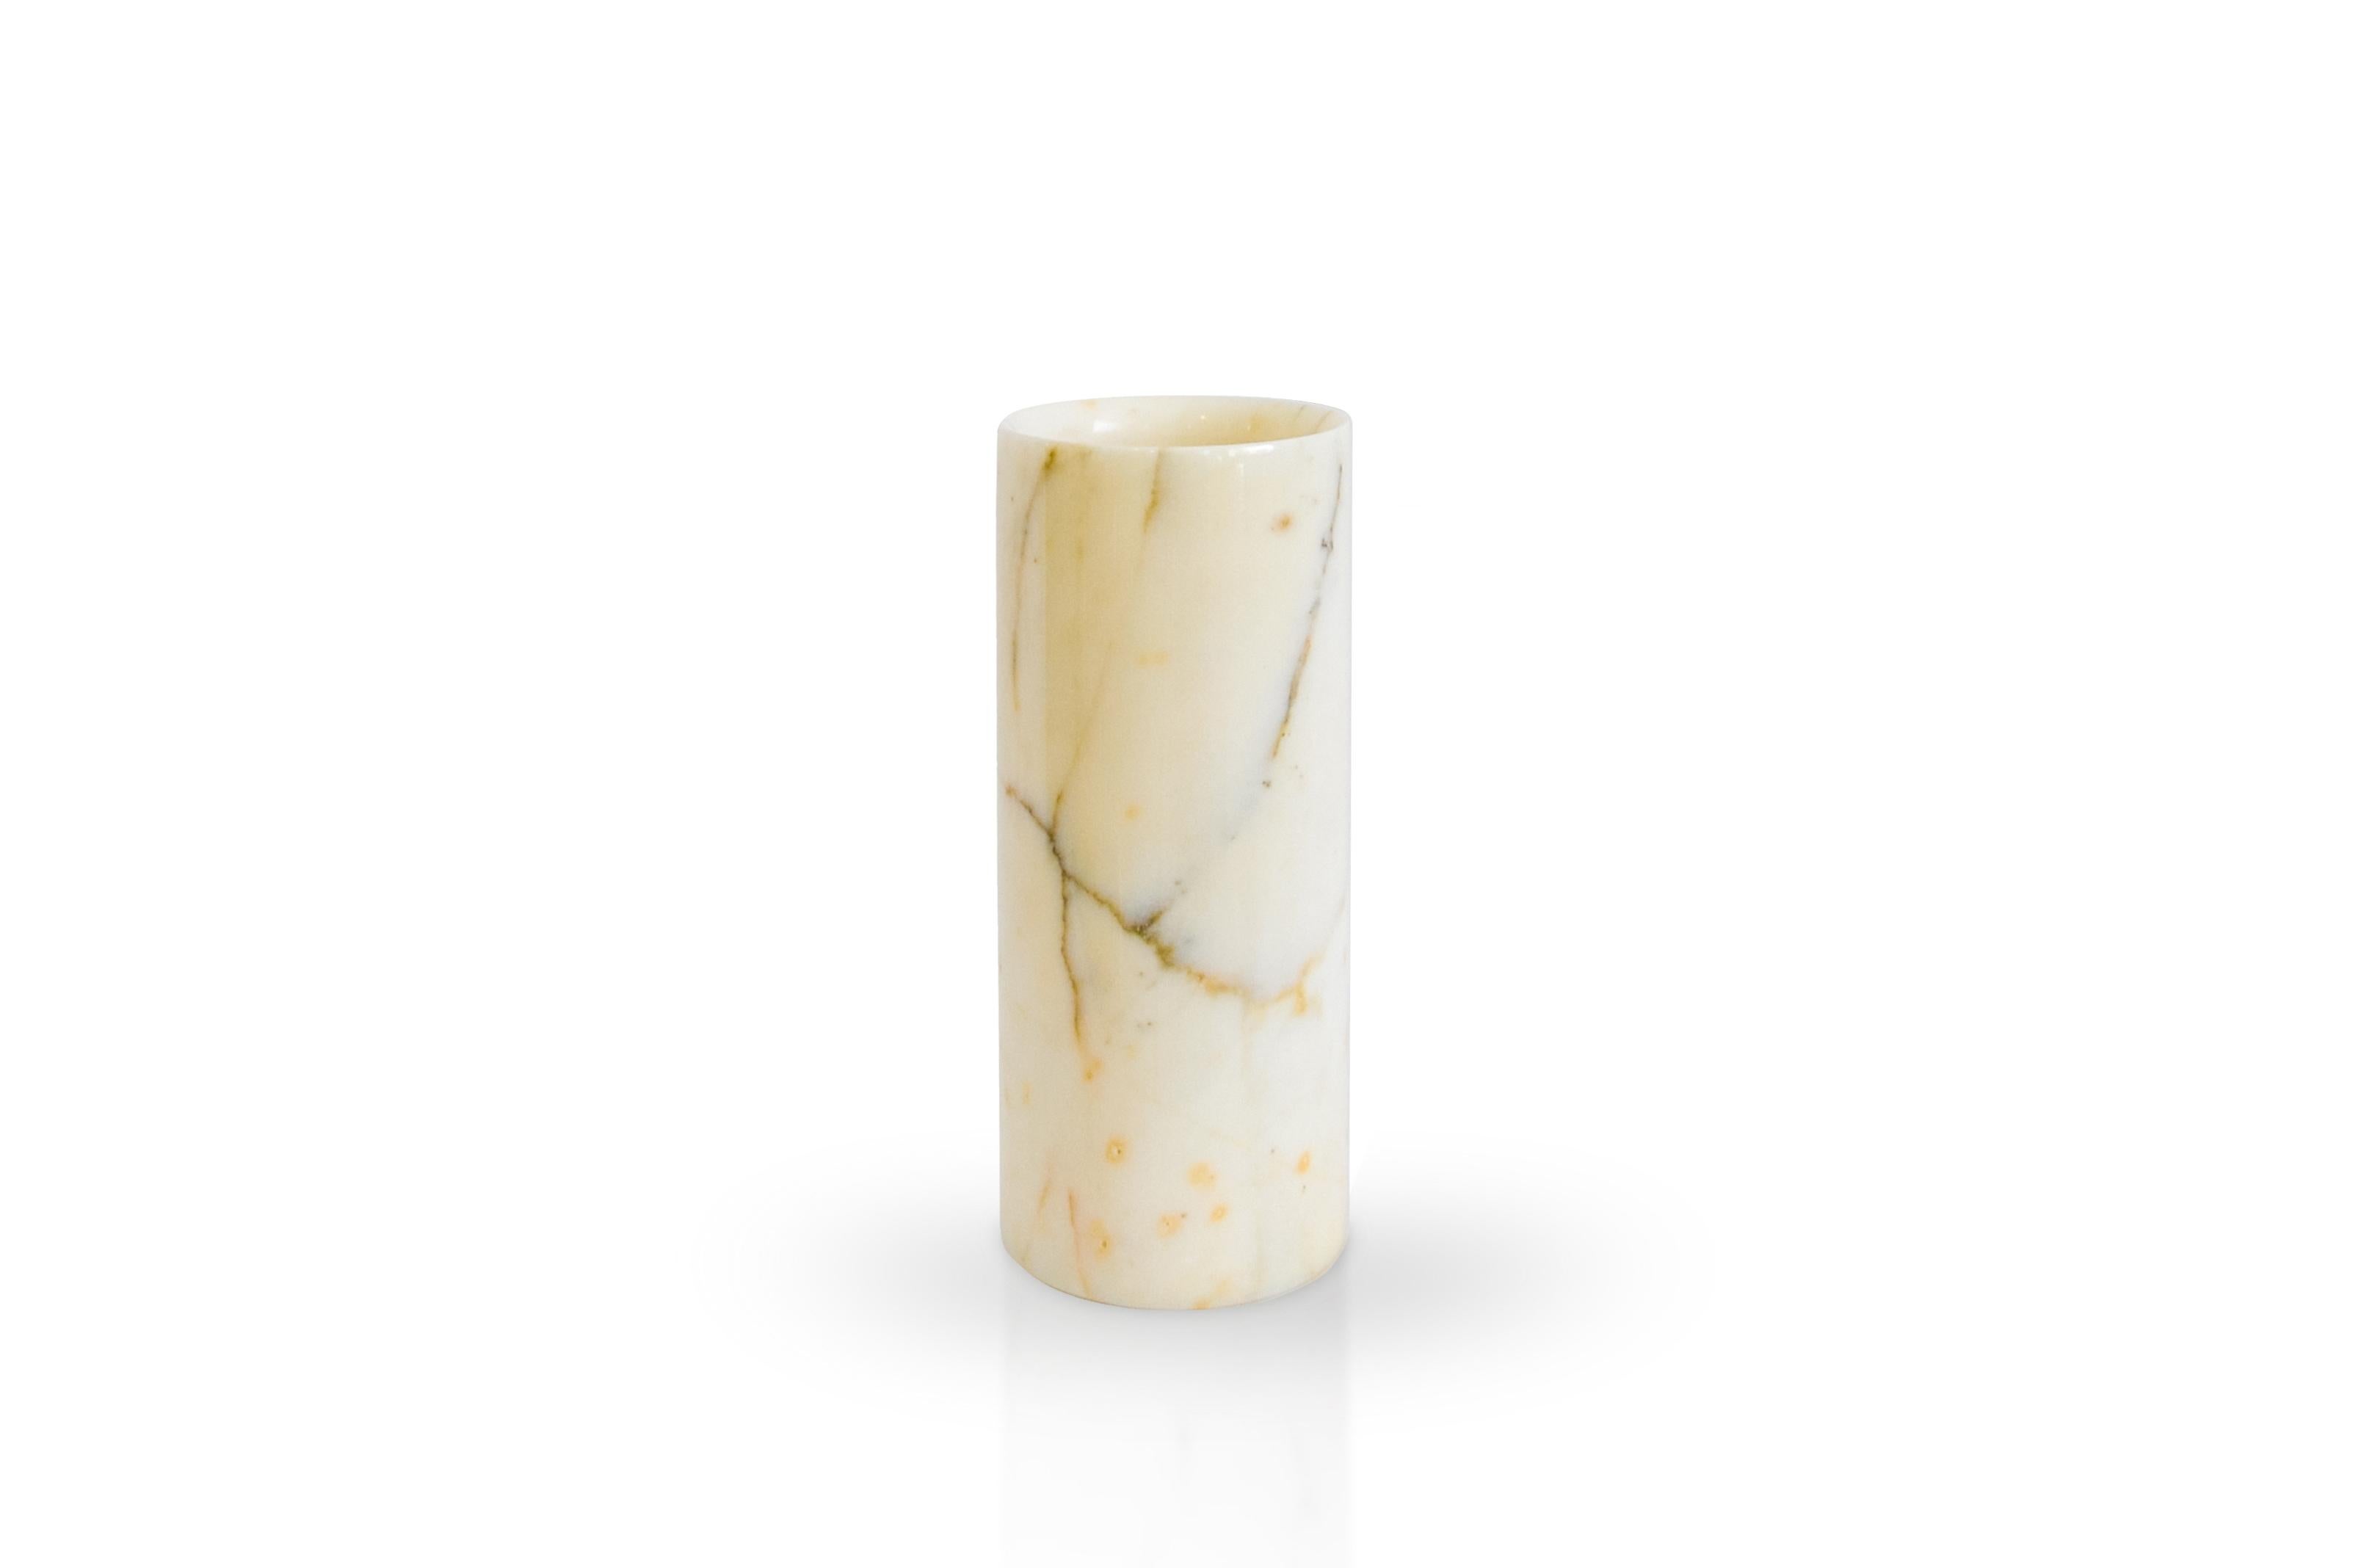 Vase cylindrique en marbre de Paonazzo fabriqué en Italie, Carrara.

Chaque pièce est en quelque sorte unique (puisque chaque bloc de marbre est différent par ses veines et ses nuances) et fabriquée à la main en Italie. Les légères variations de